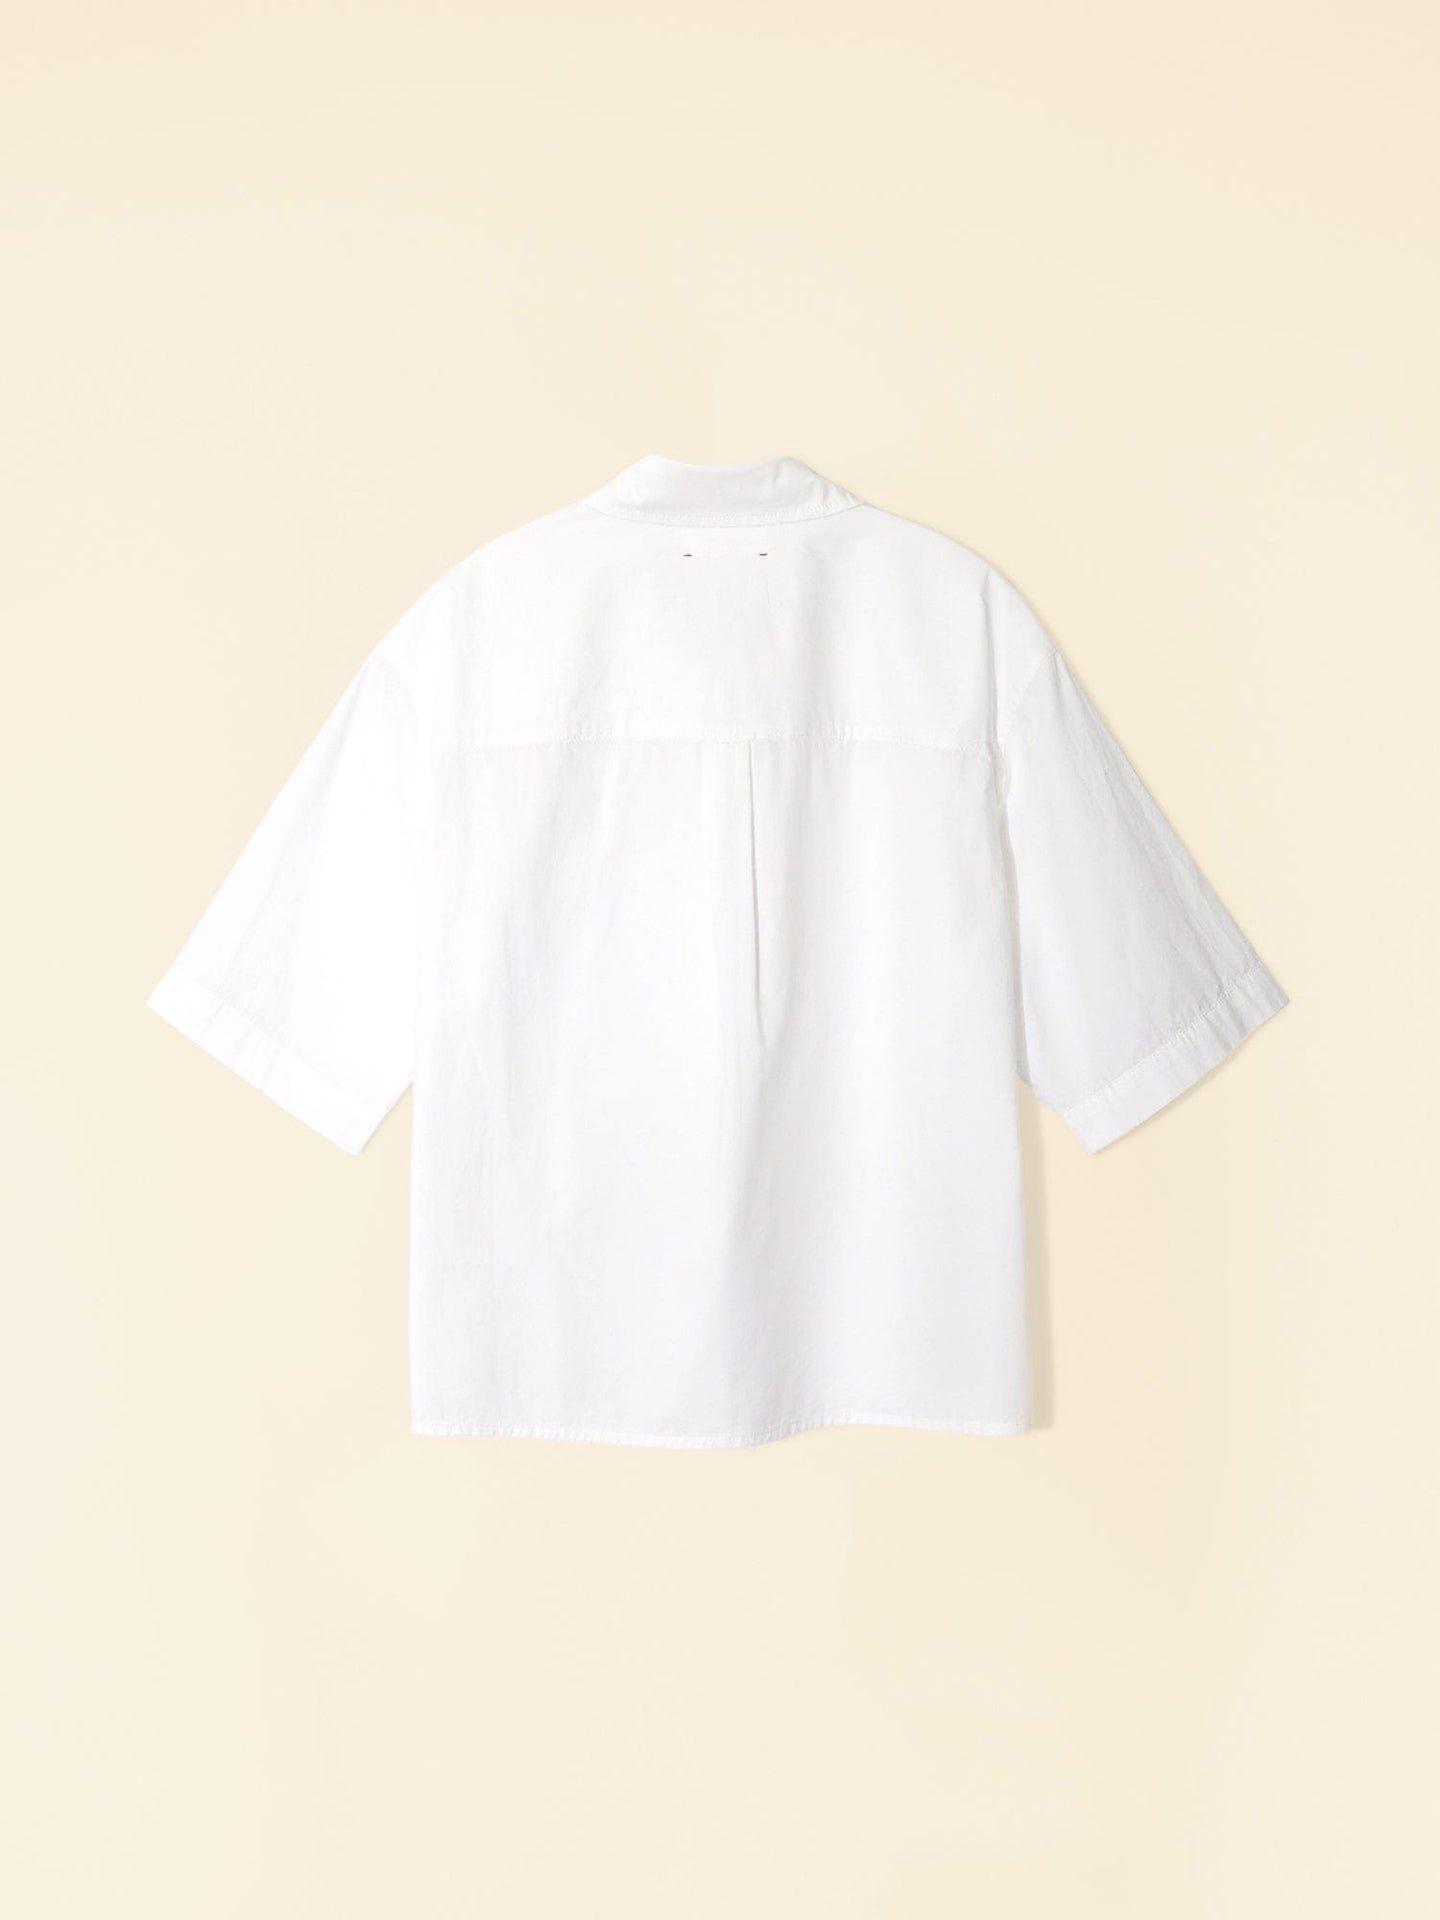 Xirena Shirt White Gracie Shirt